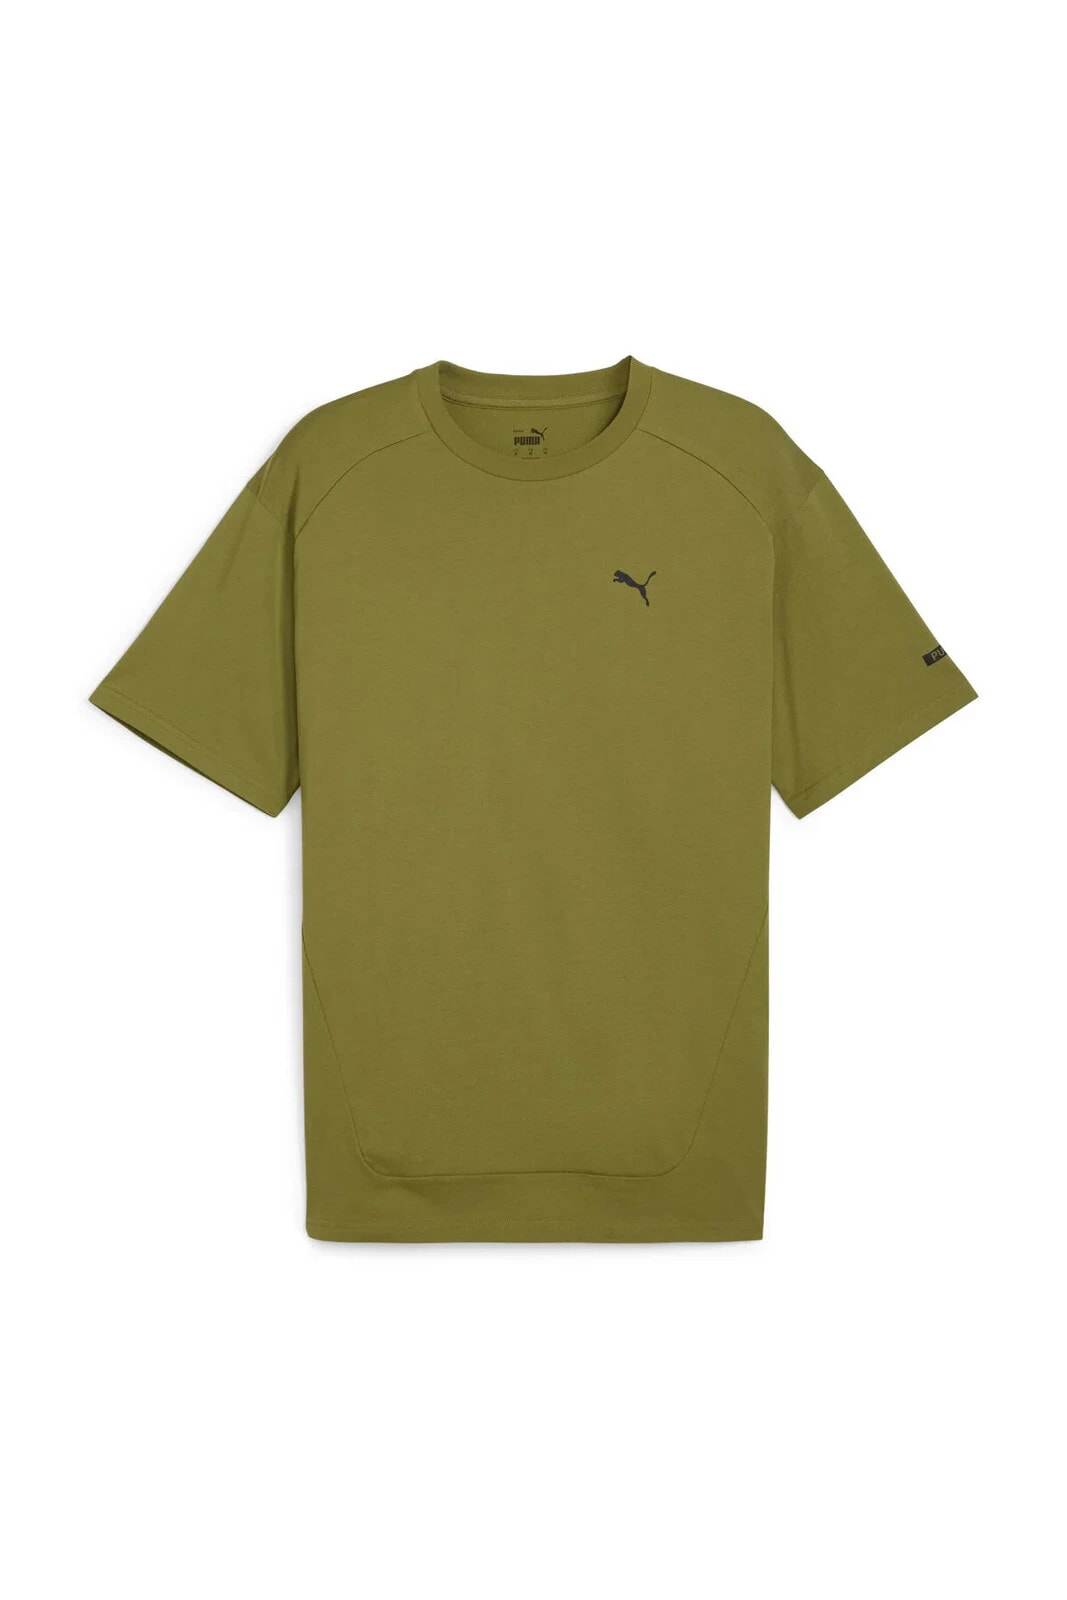 RAD/CAL Tee Yeşil Erkek Kısa Kol T-Shirt